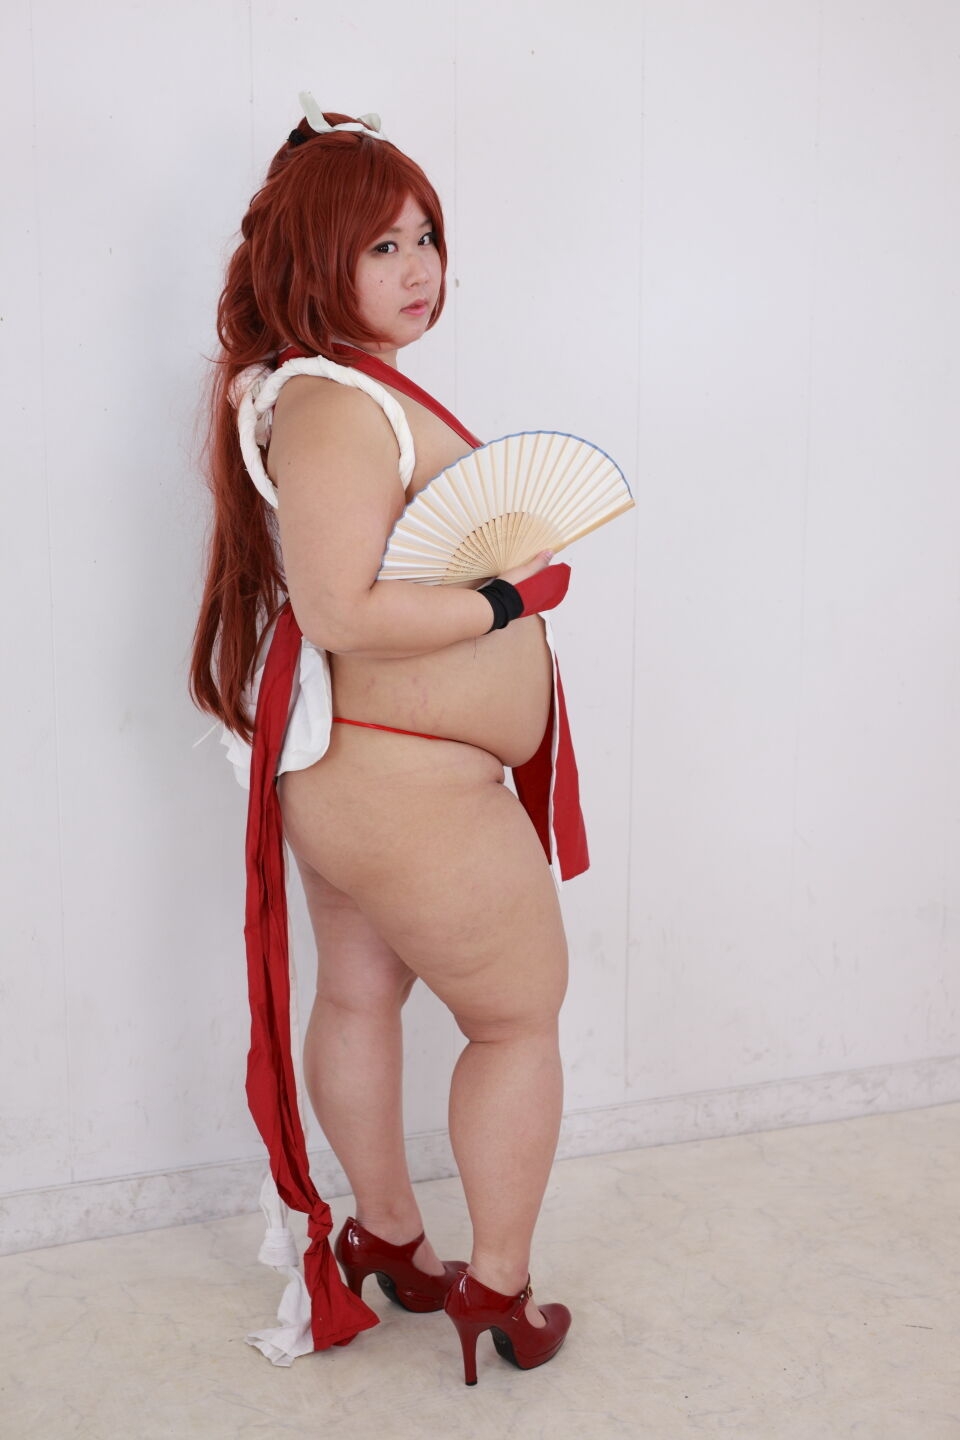 (渡辺さくらん) FIGHT FAT LADY (Sakuran Watanabe) (Mai Shiranui - Fatal Fury) (Chun-Li - Street Fighter) 116